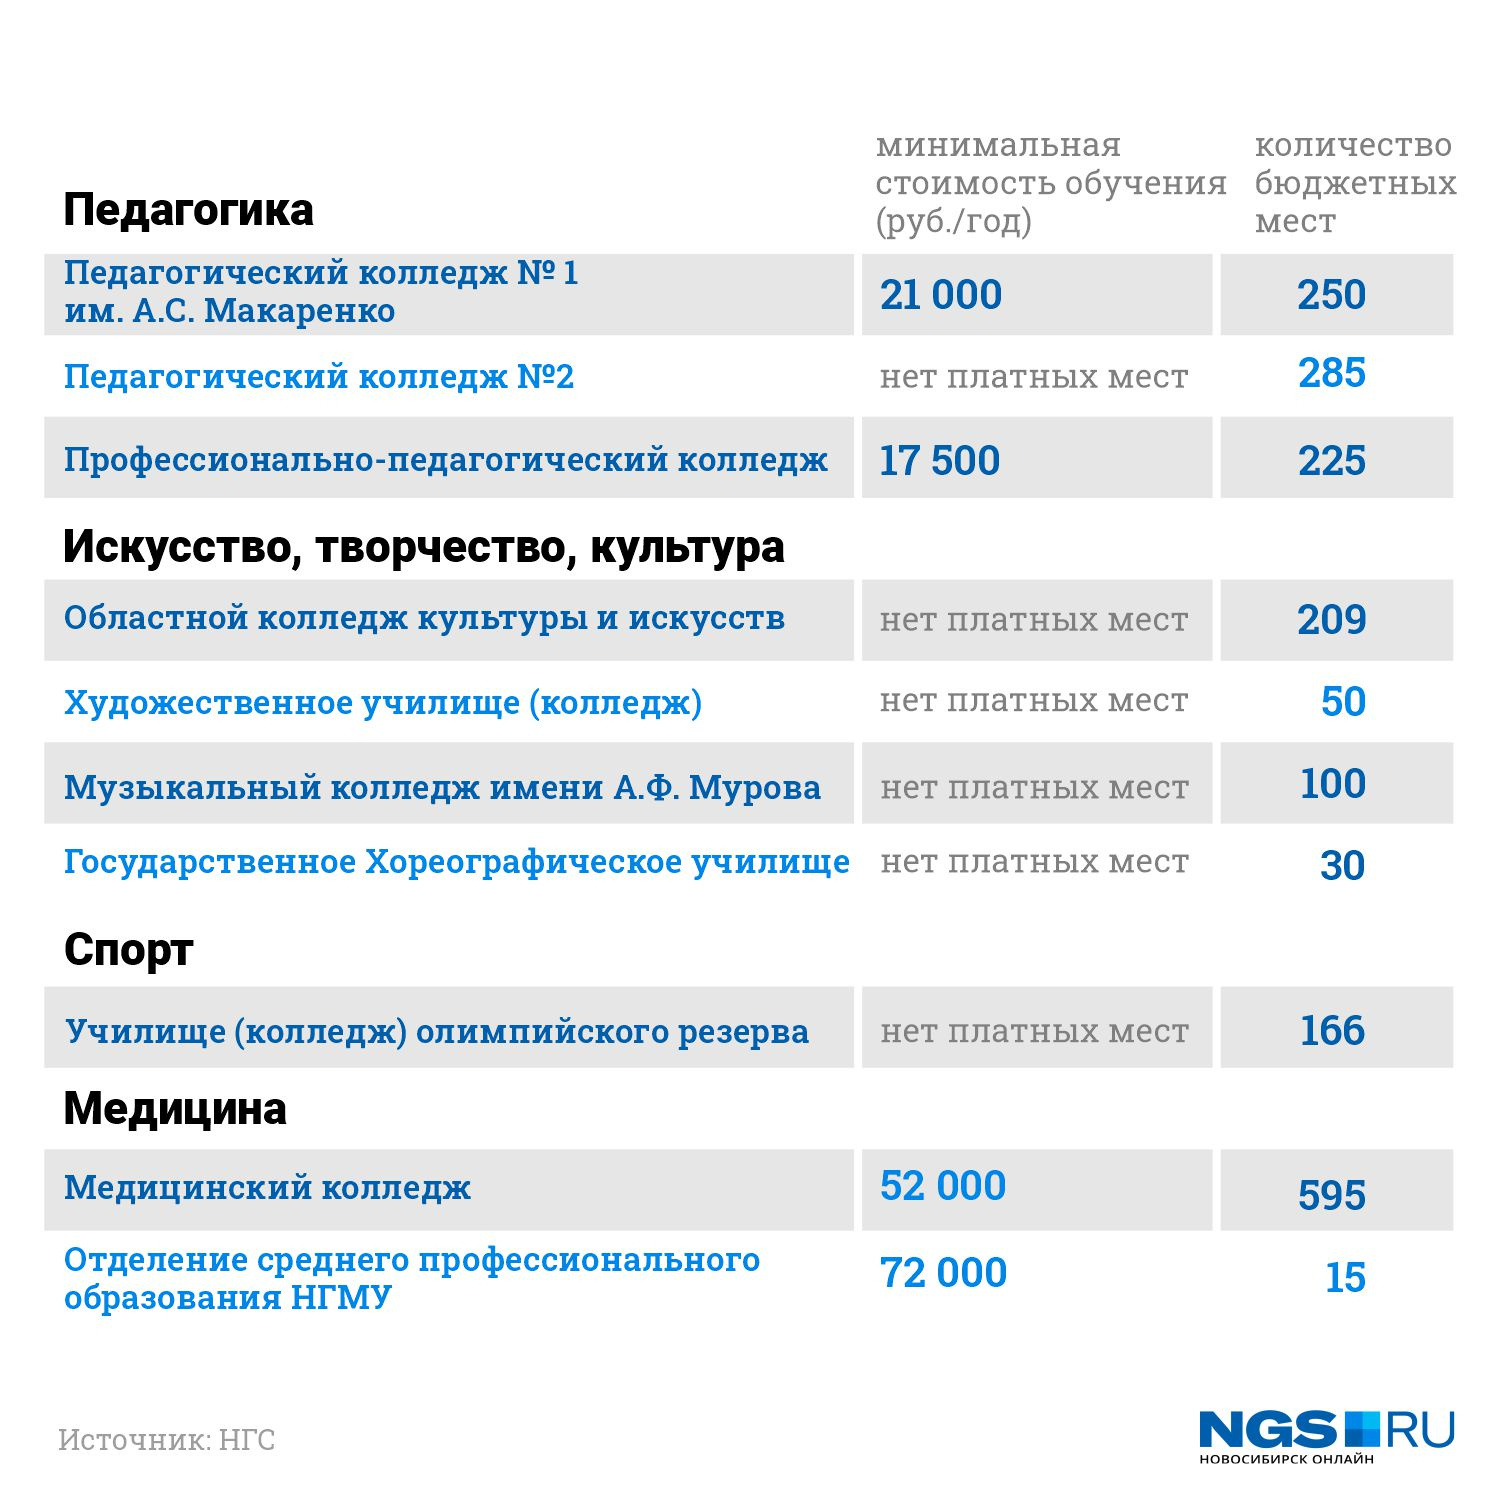 Колледж новосибирск специальности после 9. Техникум Новосибирск после 9. Куда можно поступить после 9 класса. Список для колледжа. Новосибирск колледжи после 9 класса бюджет.